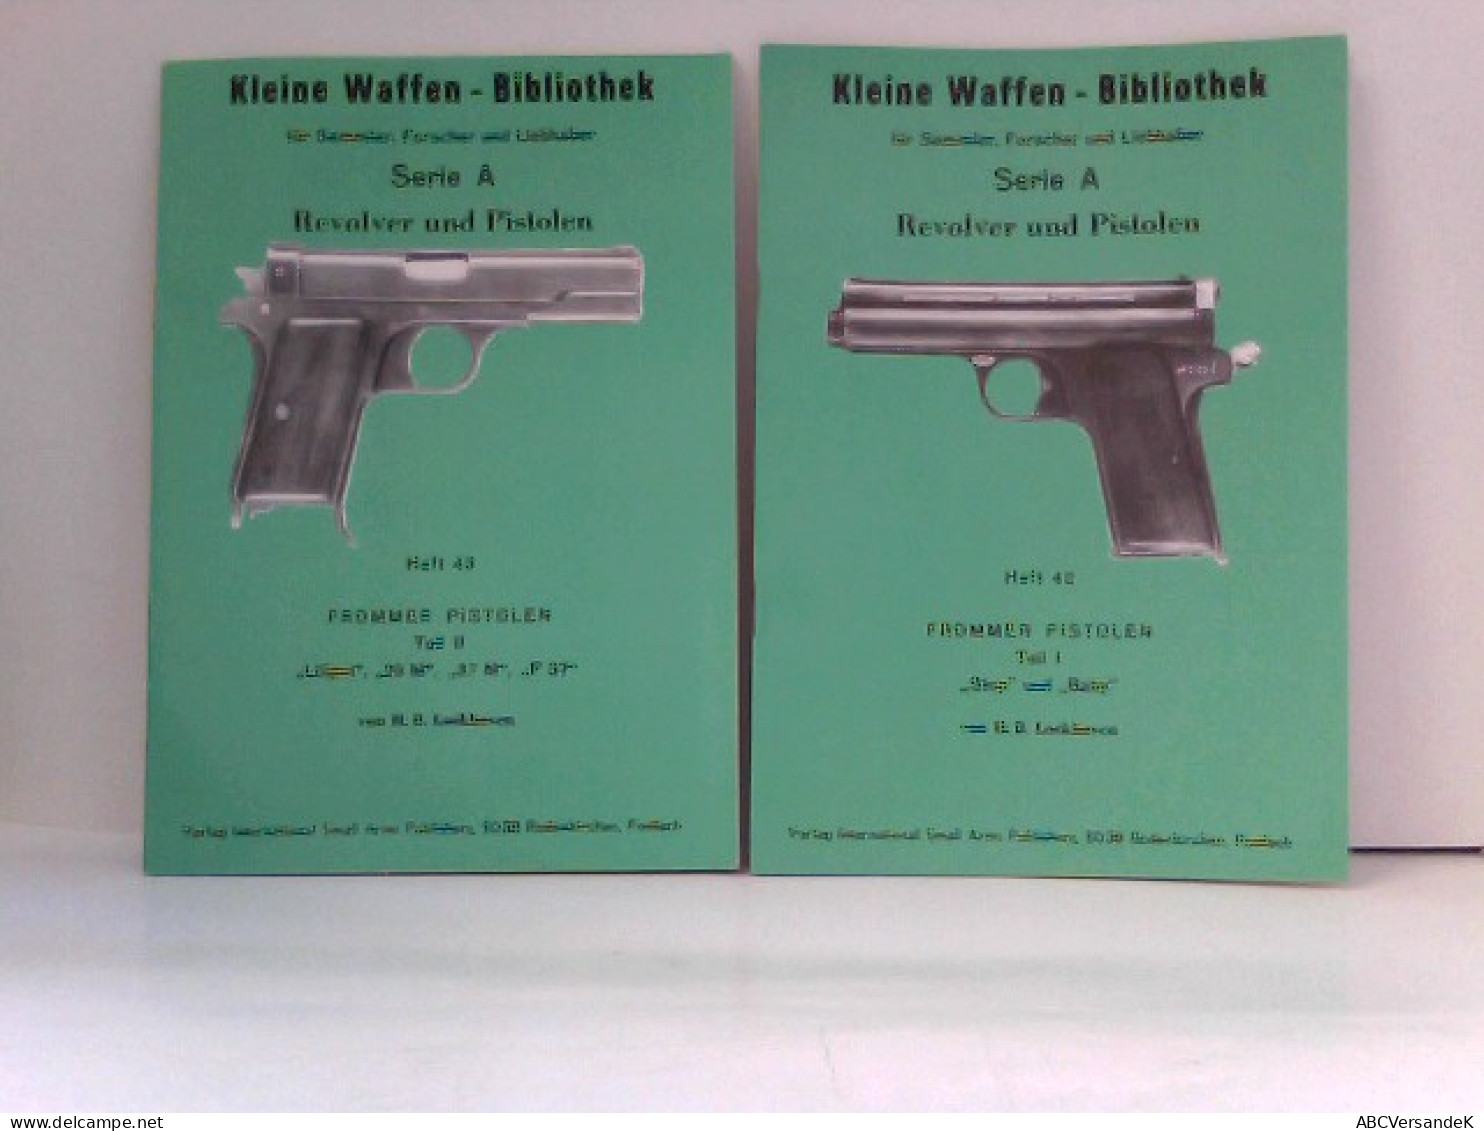 KONVOLUT Frommer Pistolen, Kleine Waffen - Bibliothek Für Sammler, Forscher Und Liebhaber - Heft 42 & Heft 43 - Politie En Leger